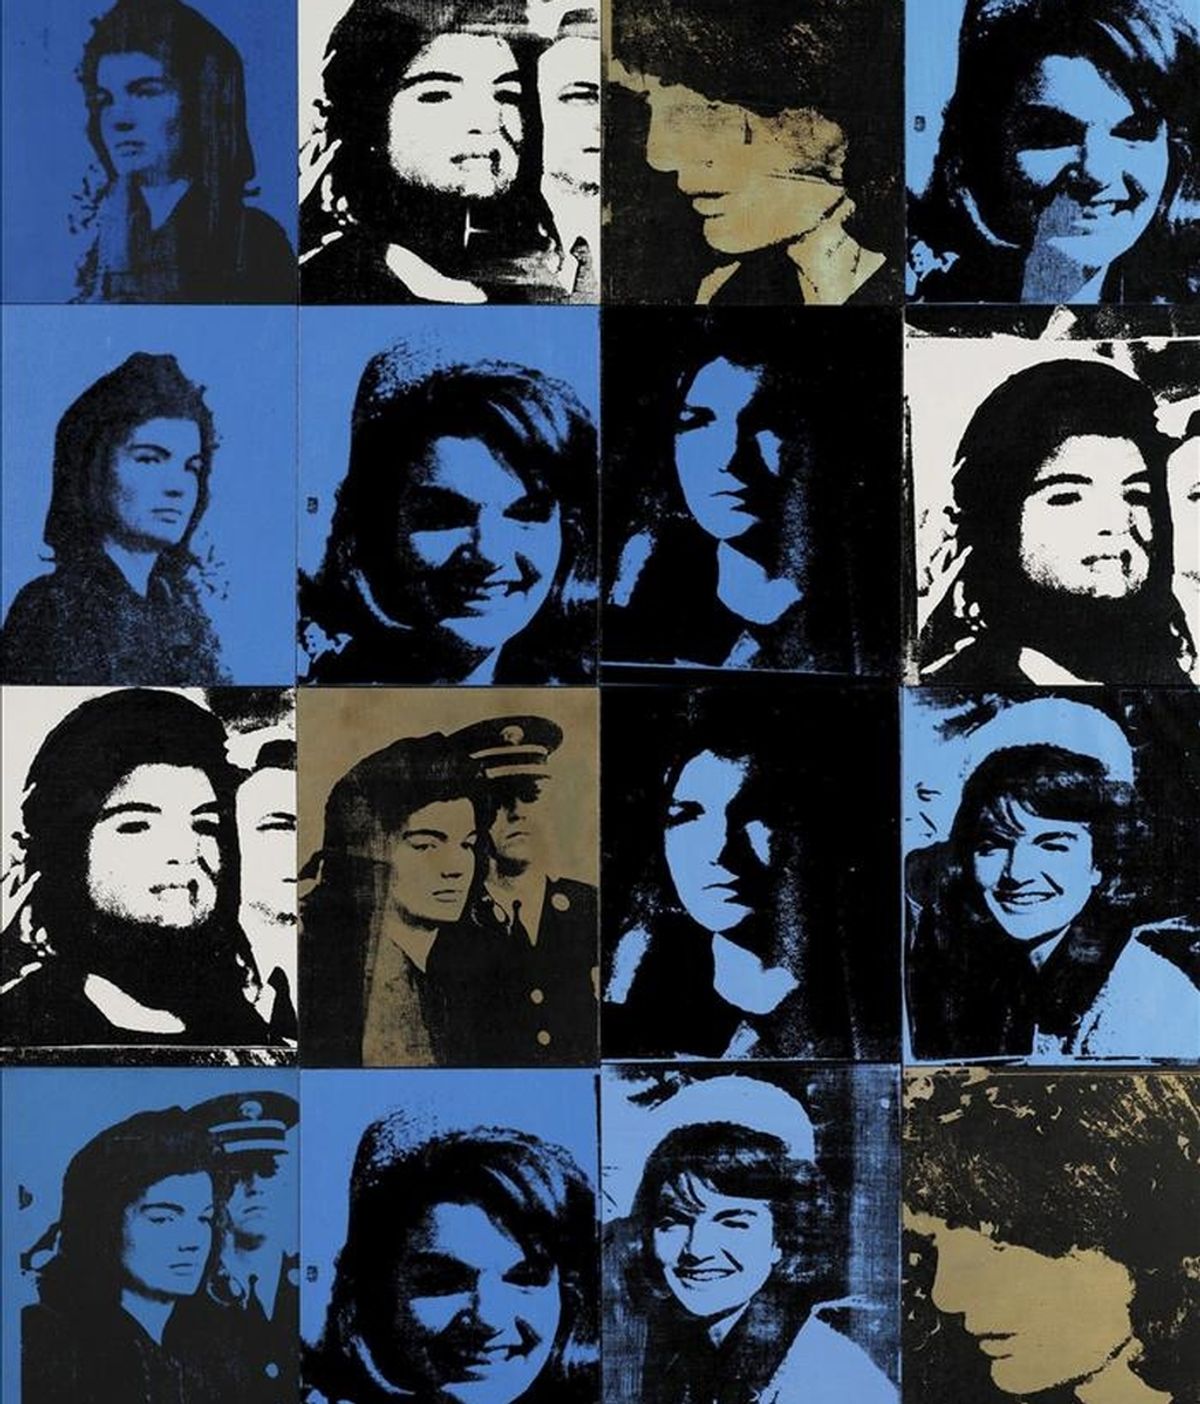 Imagen facilitada por la casa de subastas Sotheby's  en Londres, Inglaterra, que muestra la serigrafía "Sixteen Jackies", hecho por el artista Andy Warhol en 1964. EFE/SOTHEBYS